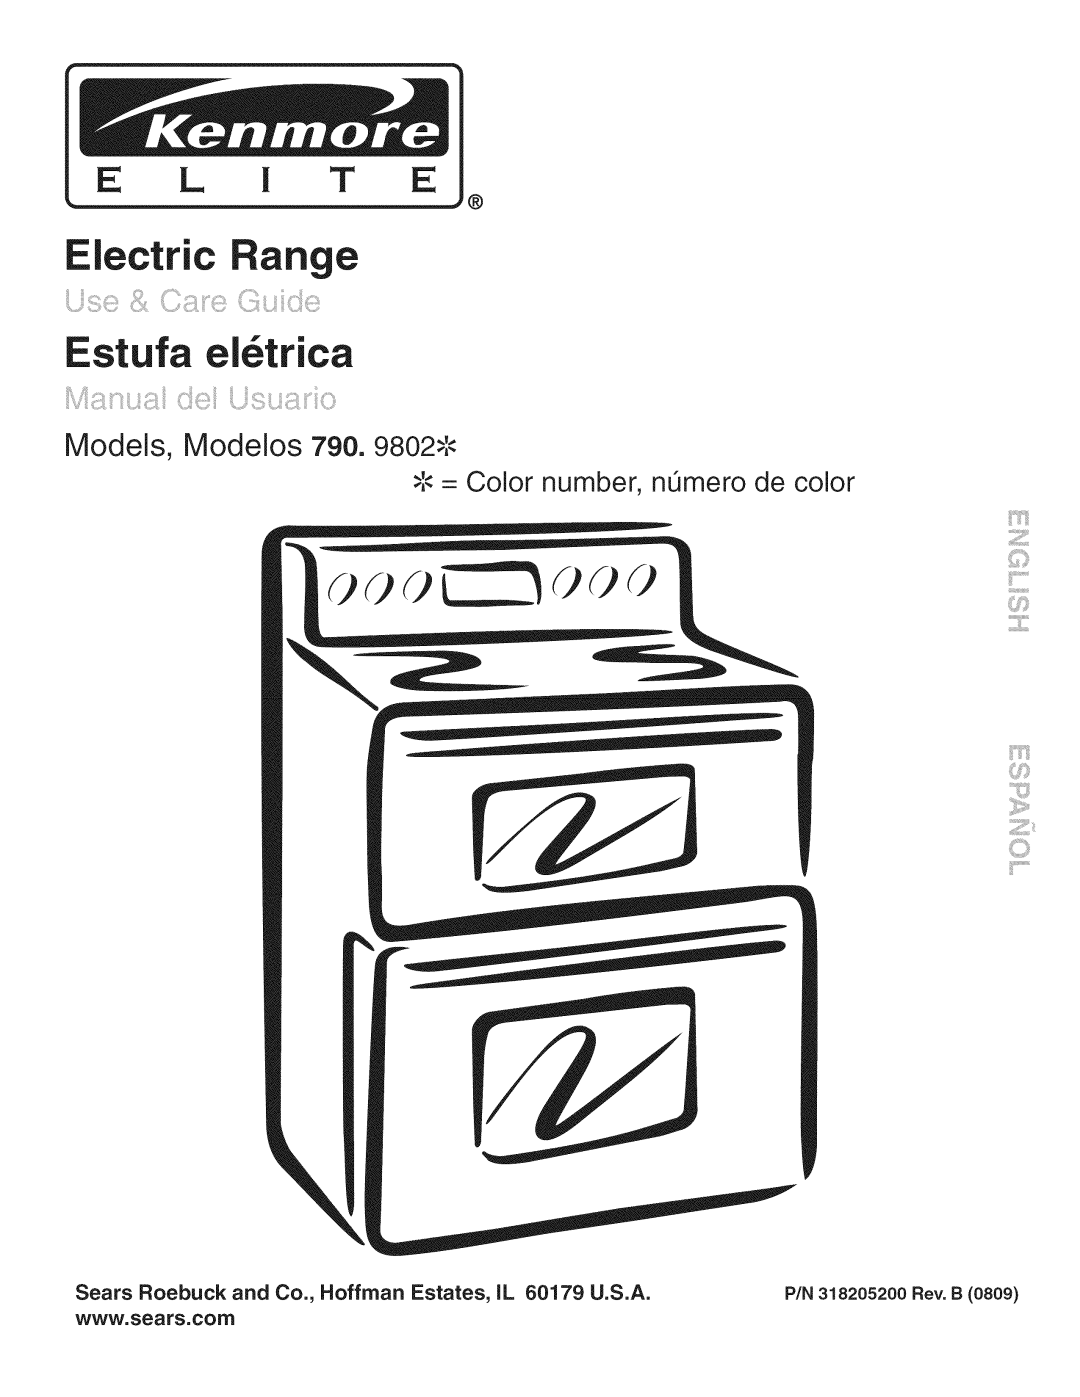 Kenmore 790. 9802 manual Models, Modelos 790, J,,,.,. = Color number, nL_mero de color, Electric ange Estufa el6trica 